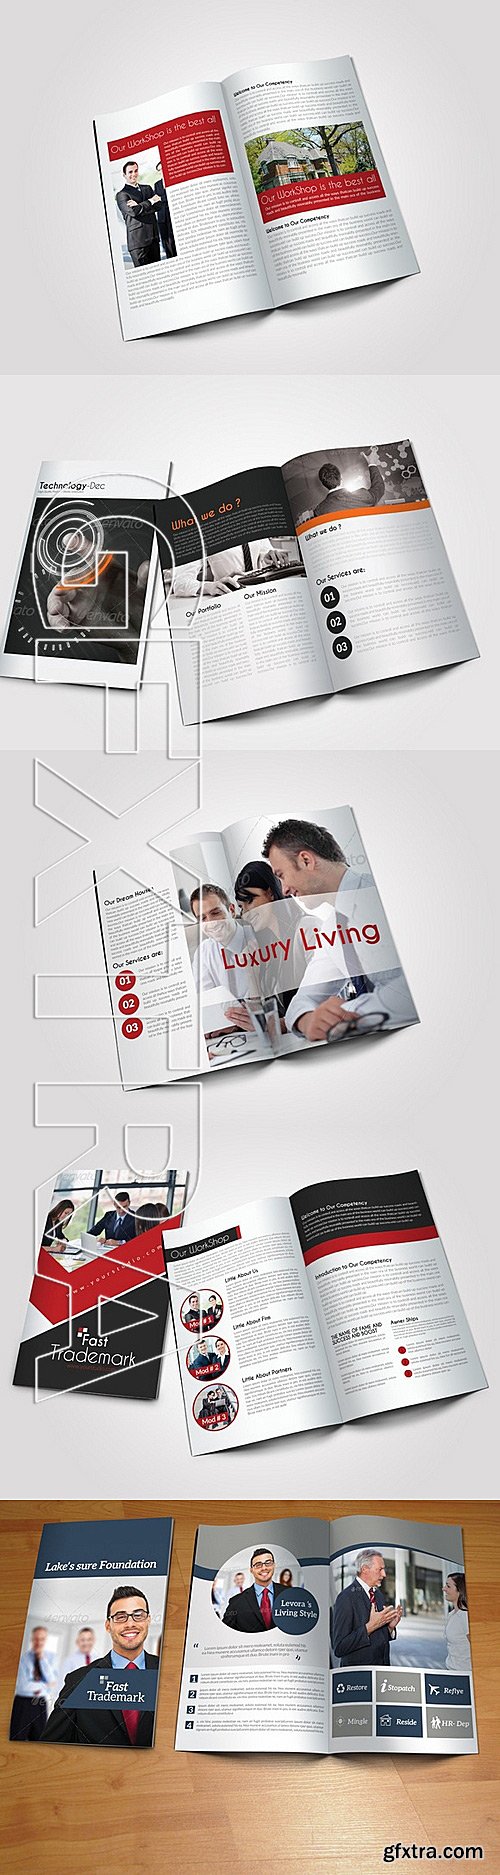 CM - 3 Business Bi Fold Brochure Bundle 281474